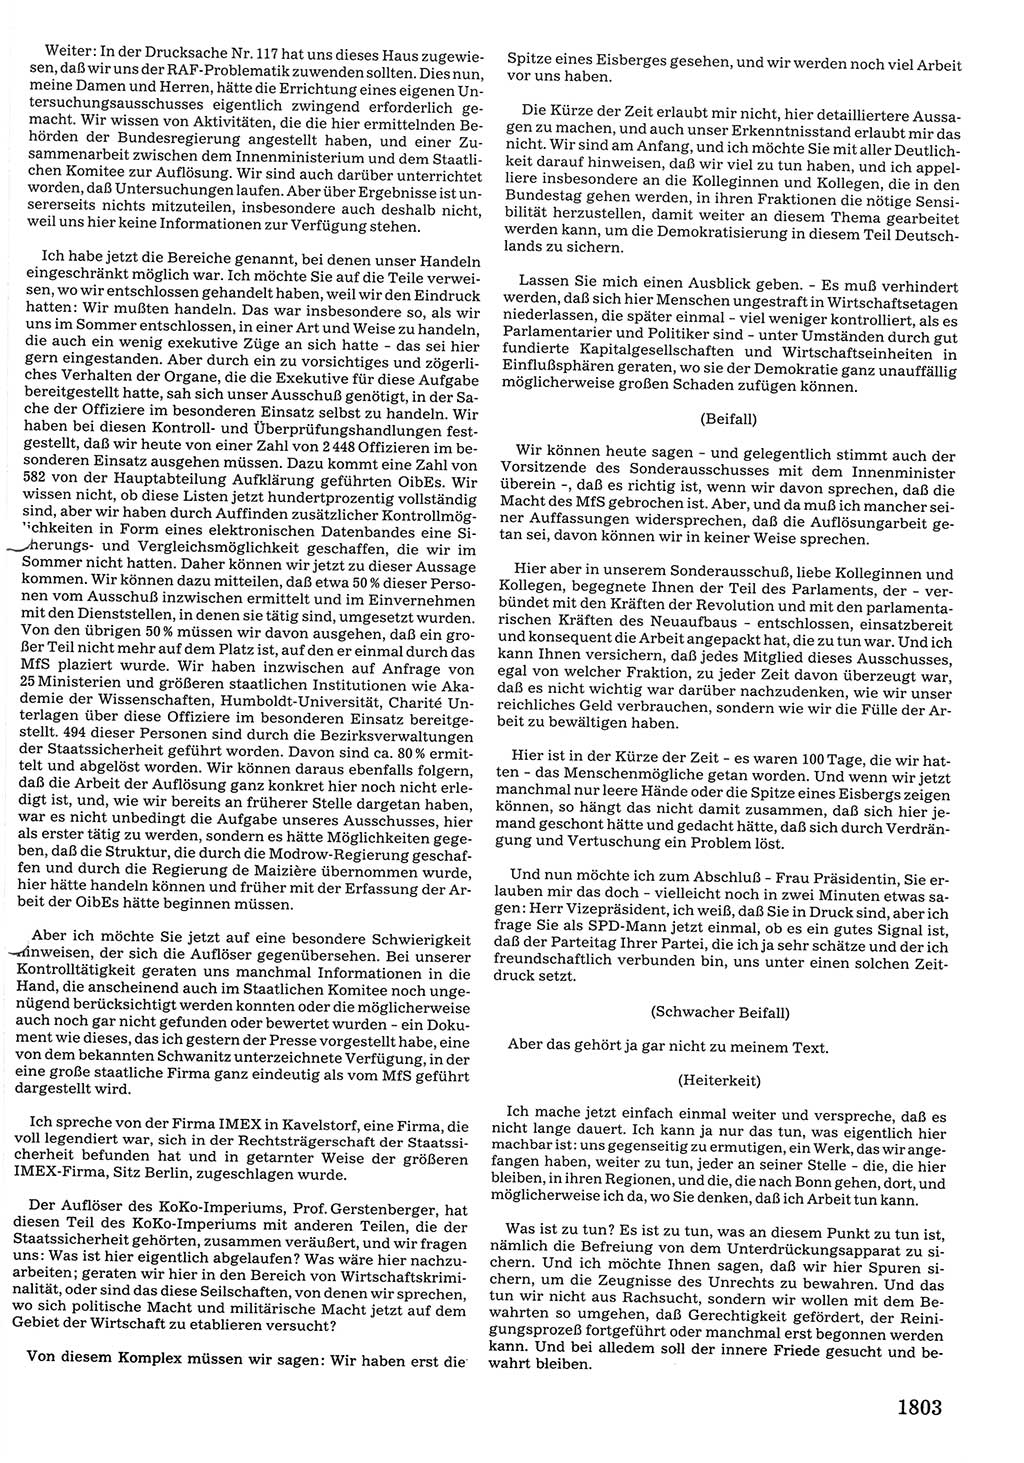 Tagungen der Volkskammer (VK) der Deutschen Demokratischen Republik (DDR), 10. Wahlperiode 1990, Seite 1803 (VK. DDR 10. WP. 1990, Prot. Tg. 1-38, 5.4.-2.10.1990, S. 1803)